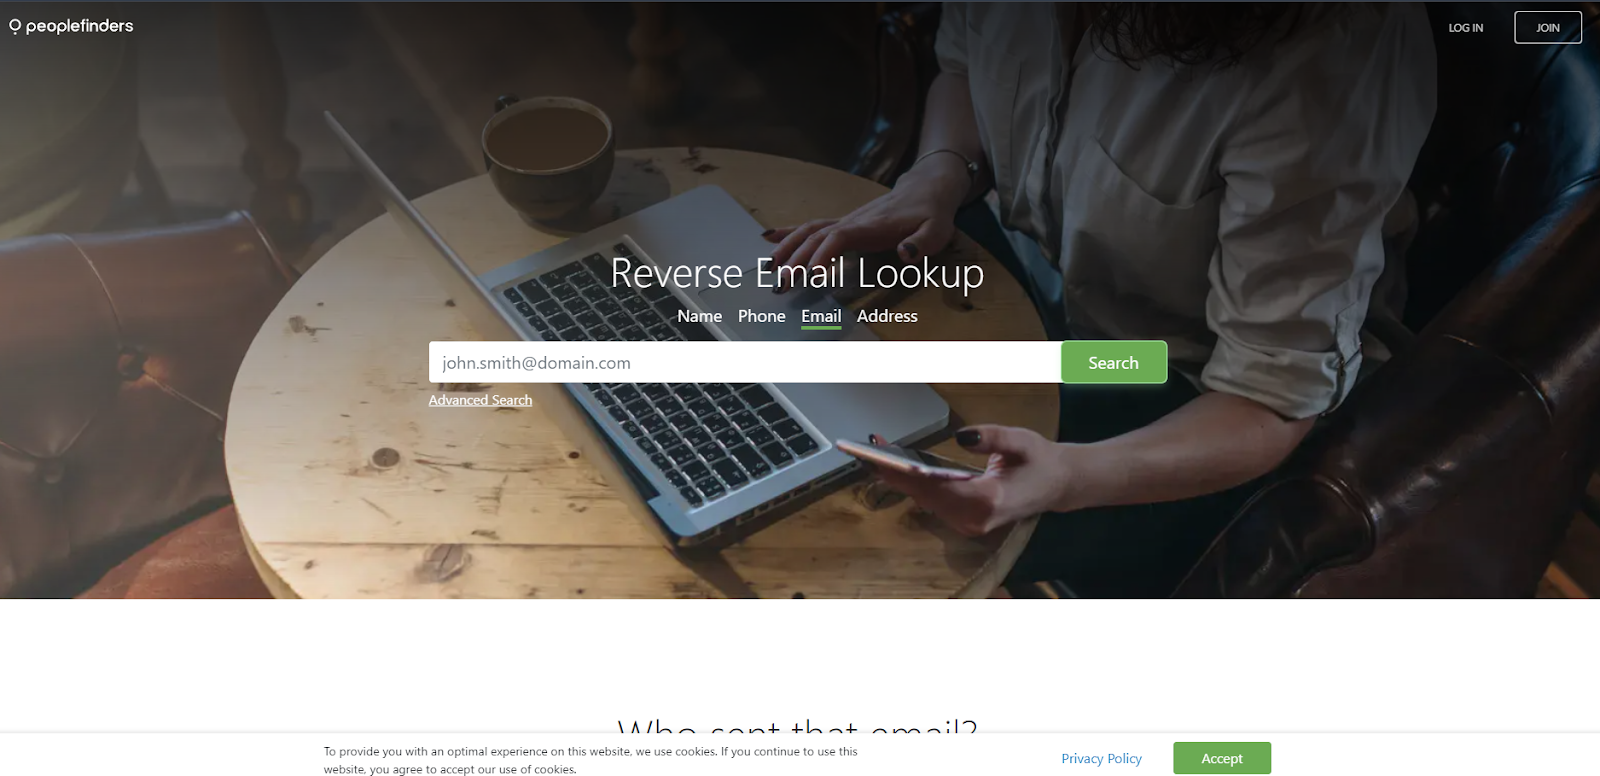 Best Reverse Email Lookup Tools: PeopleFinders